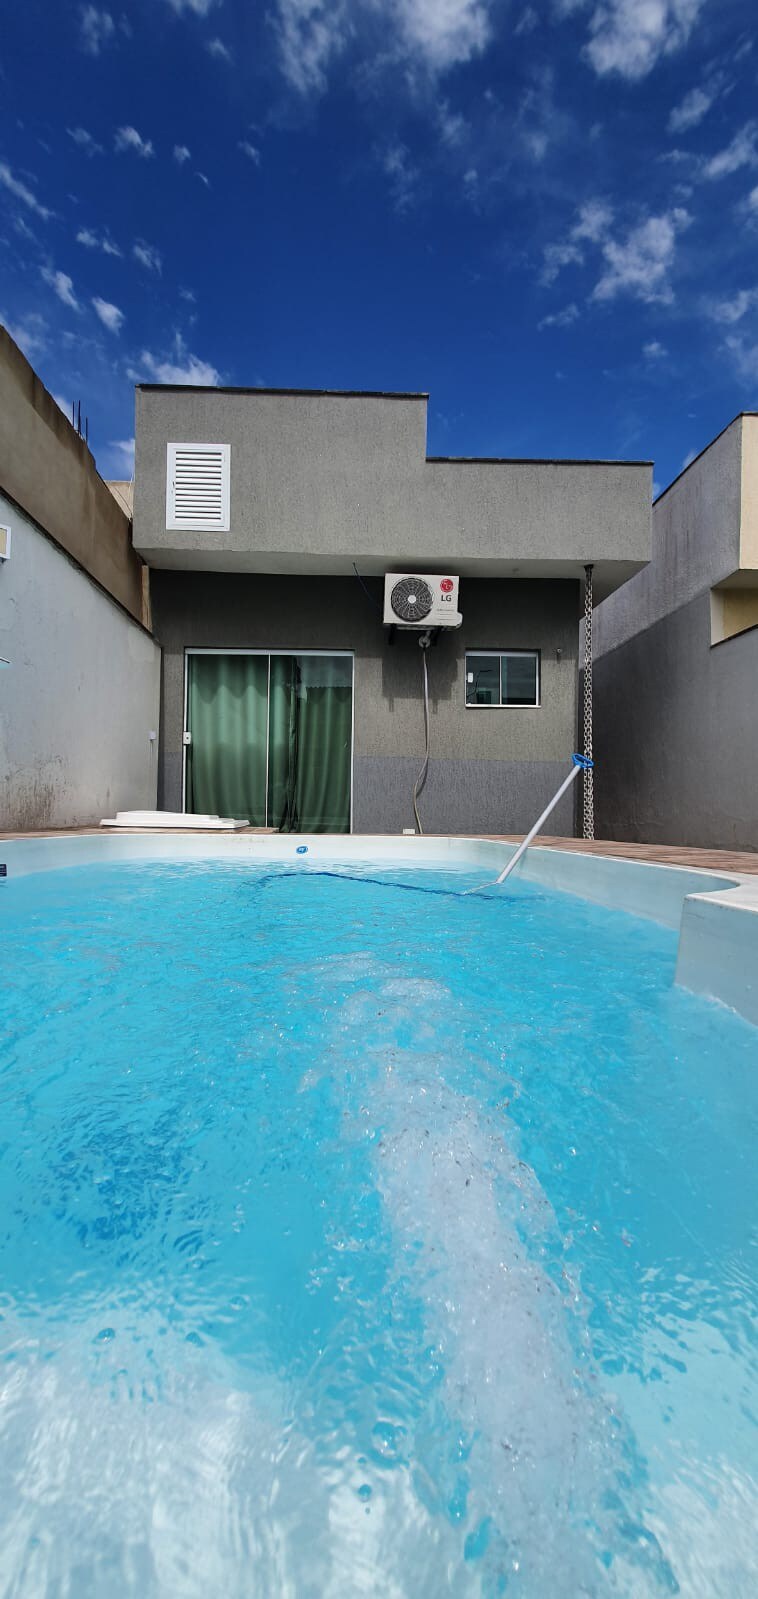 Casa com piscina em Itaipuaçu, churrasqueira.